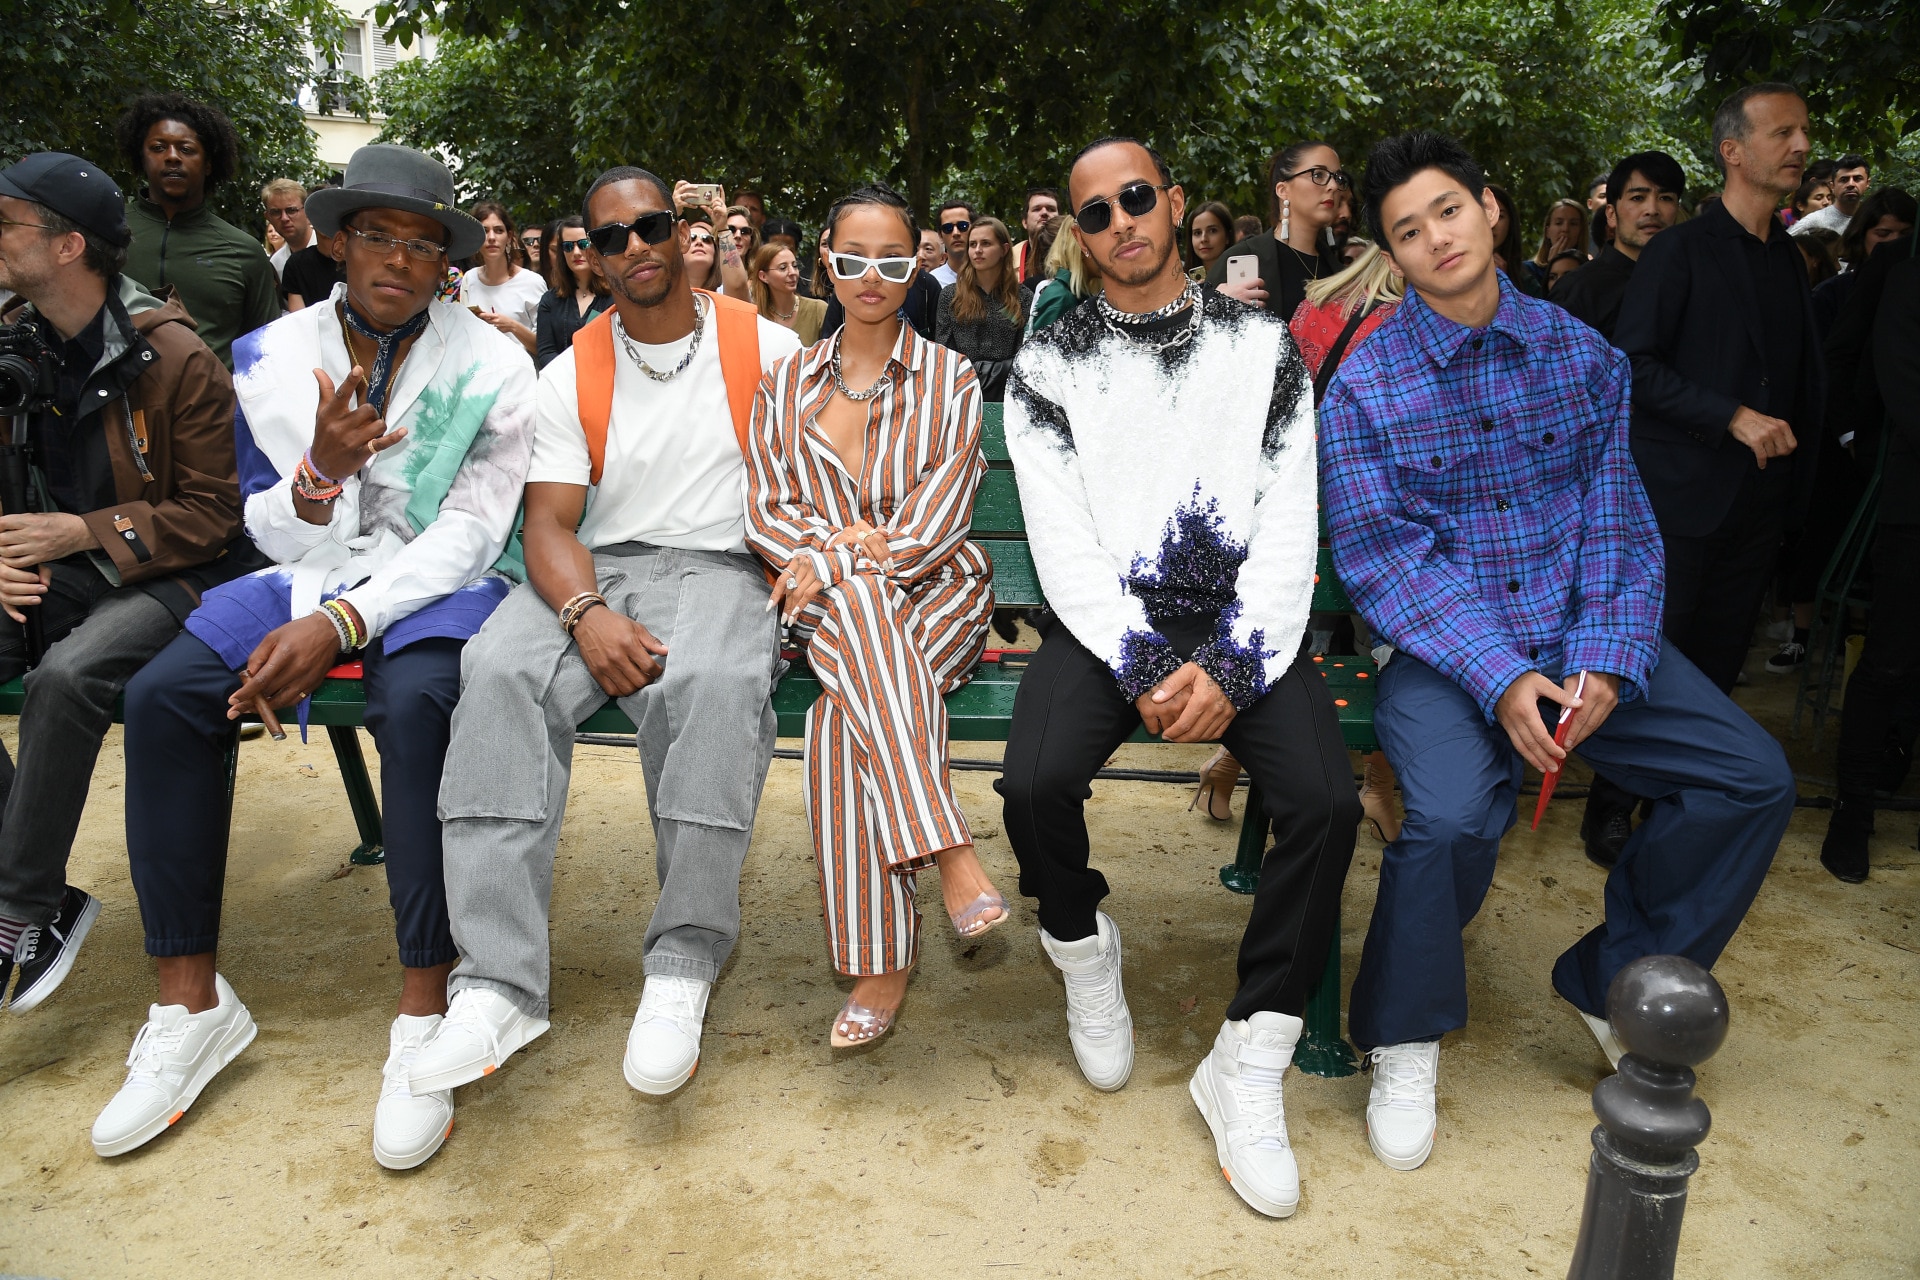 Virgil Abloh Louis Vuitton Men's Spring Summer 2019 Front Row